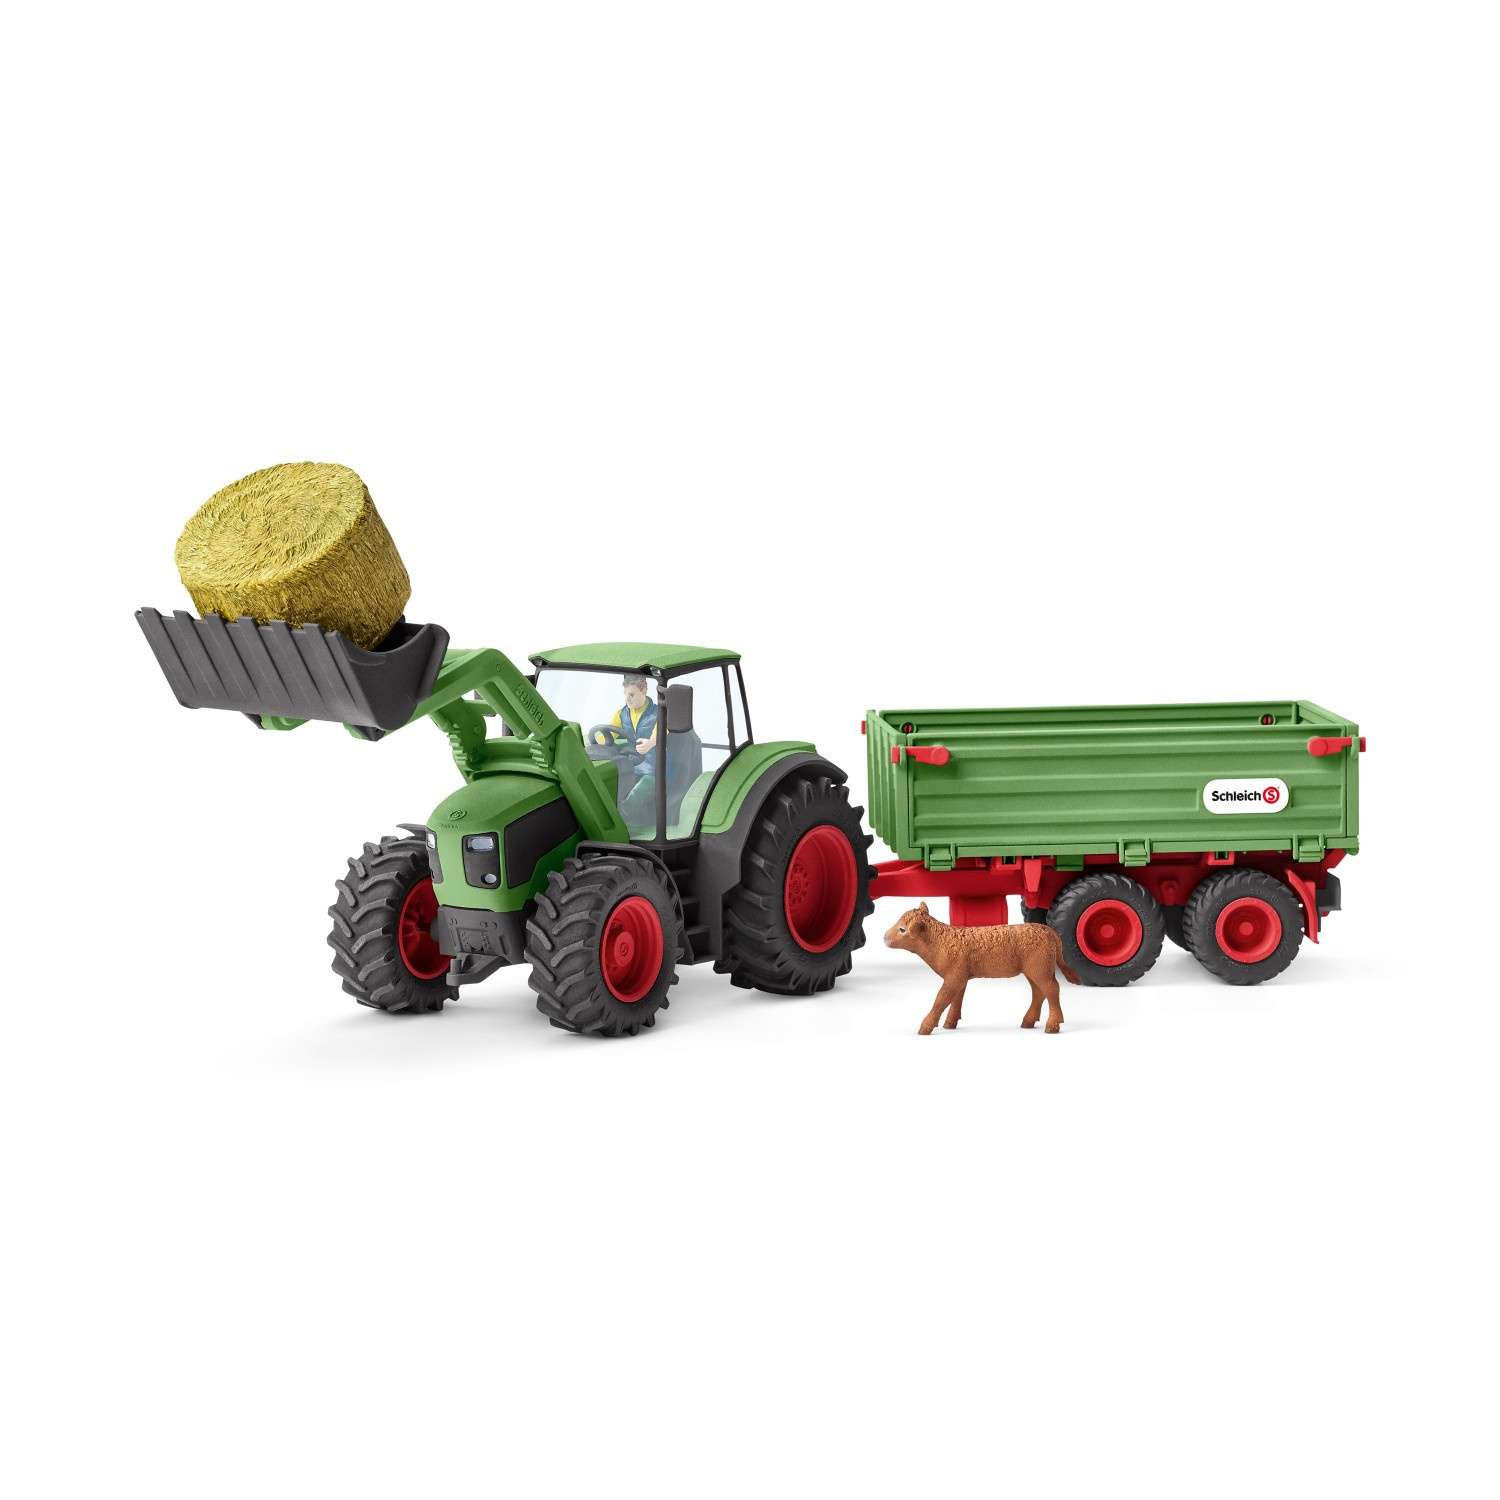 Schleich - Tractor with trailer (42379)